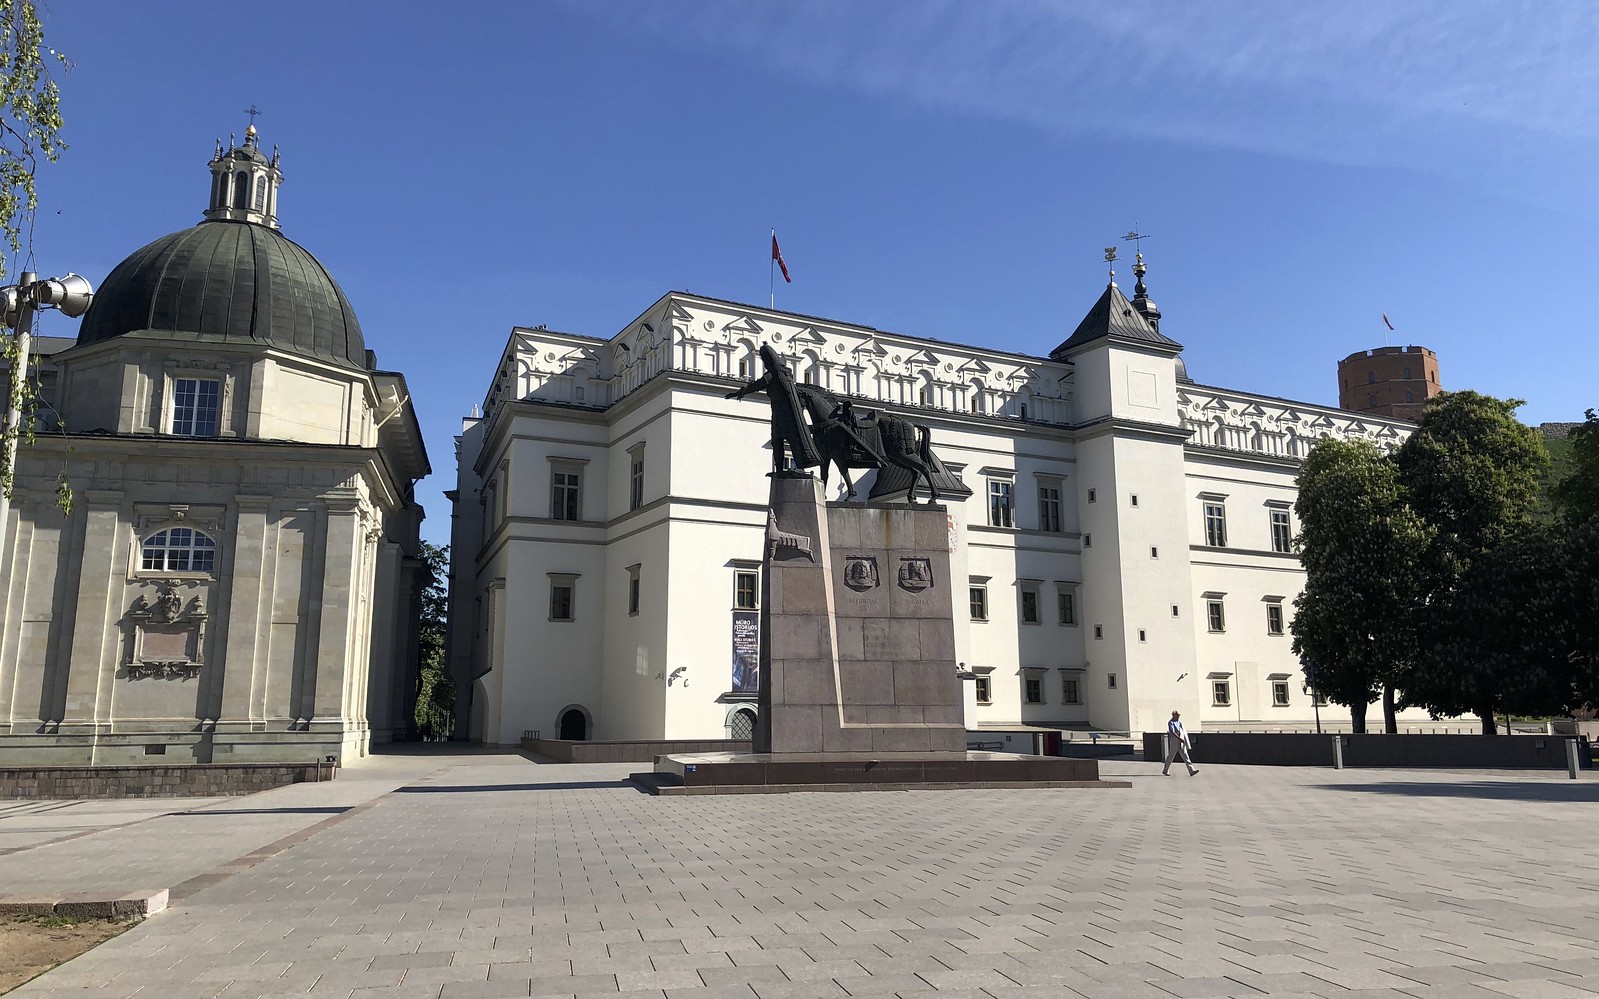 Suuruhtinaiden palatsi, Palace of Grand Dukes